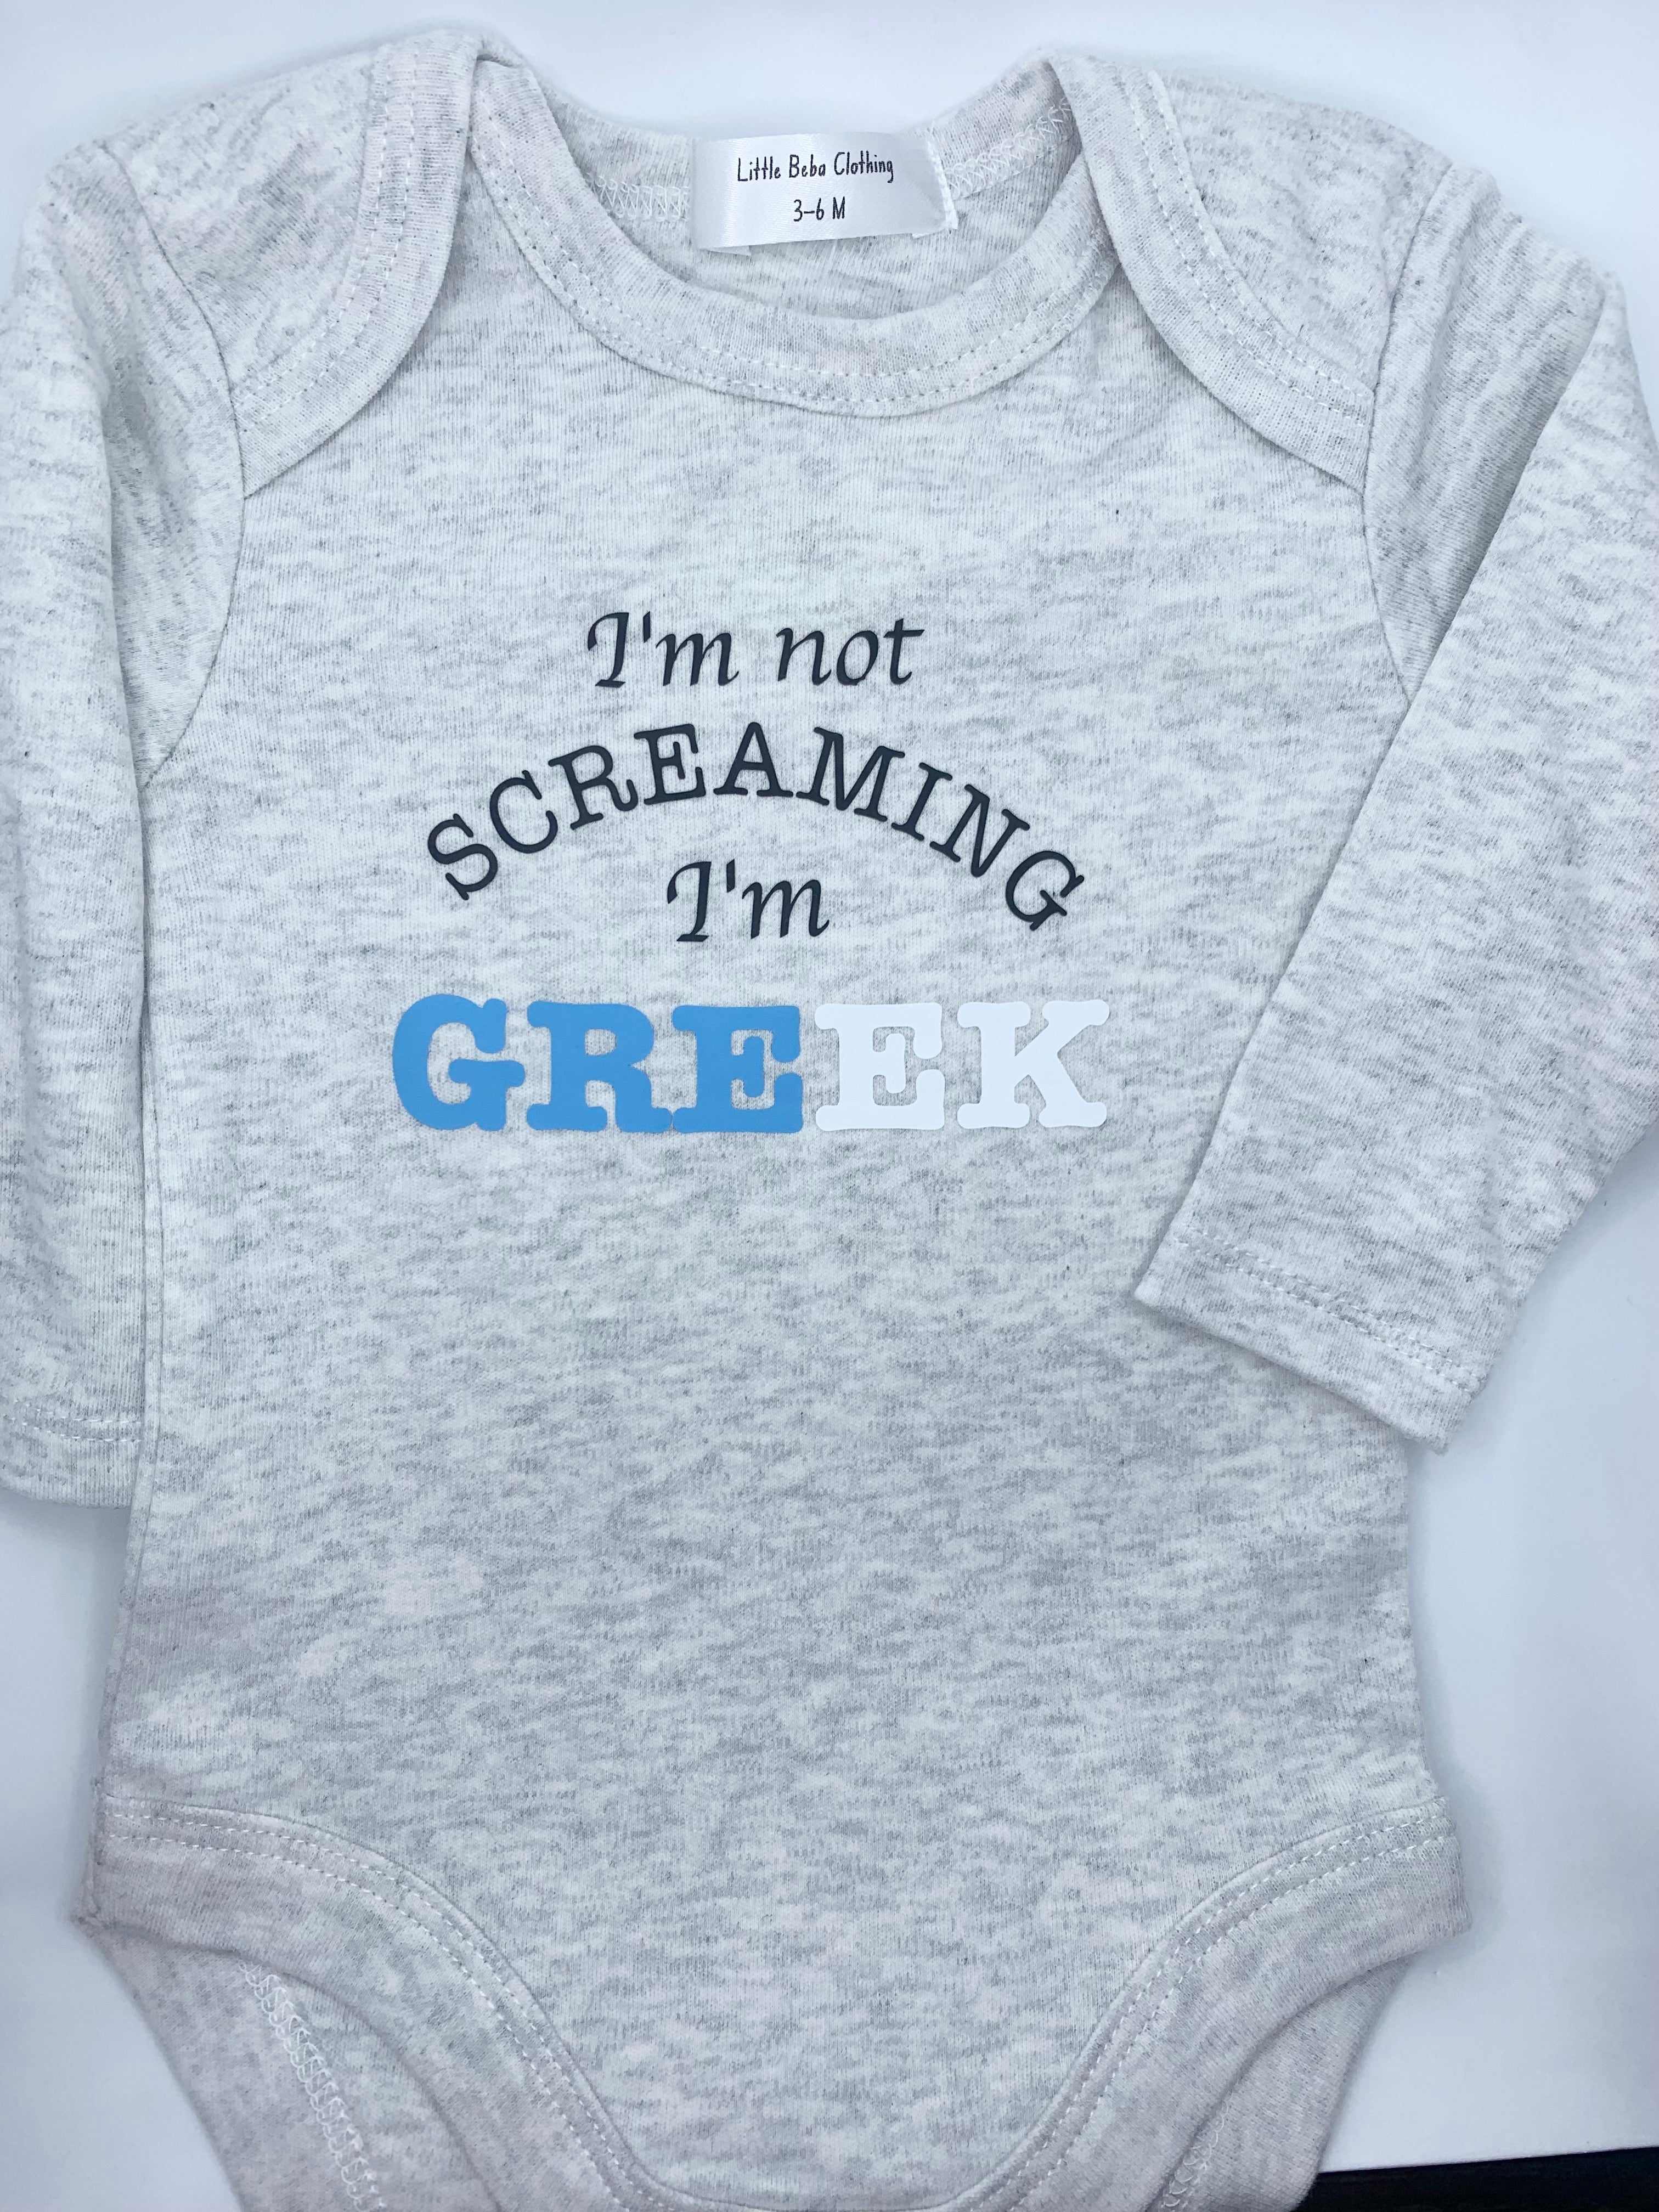 I'm not screaming, I'm Greek